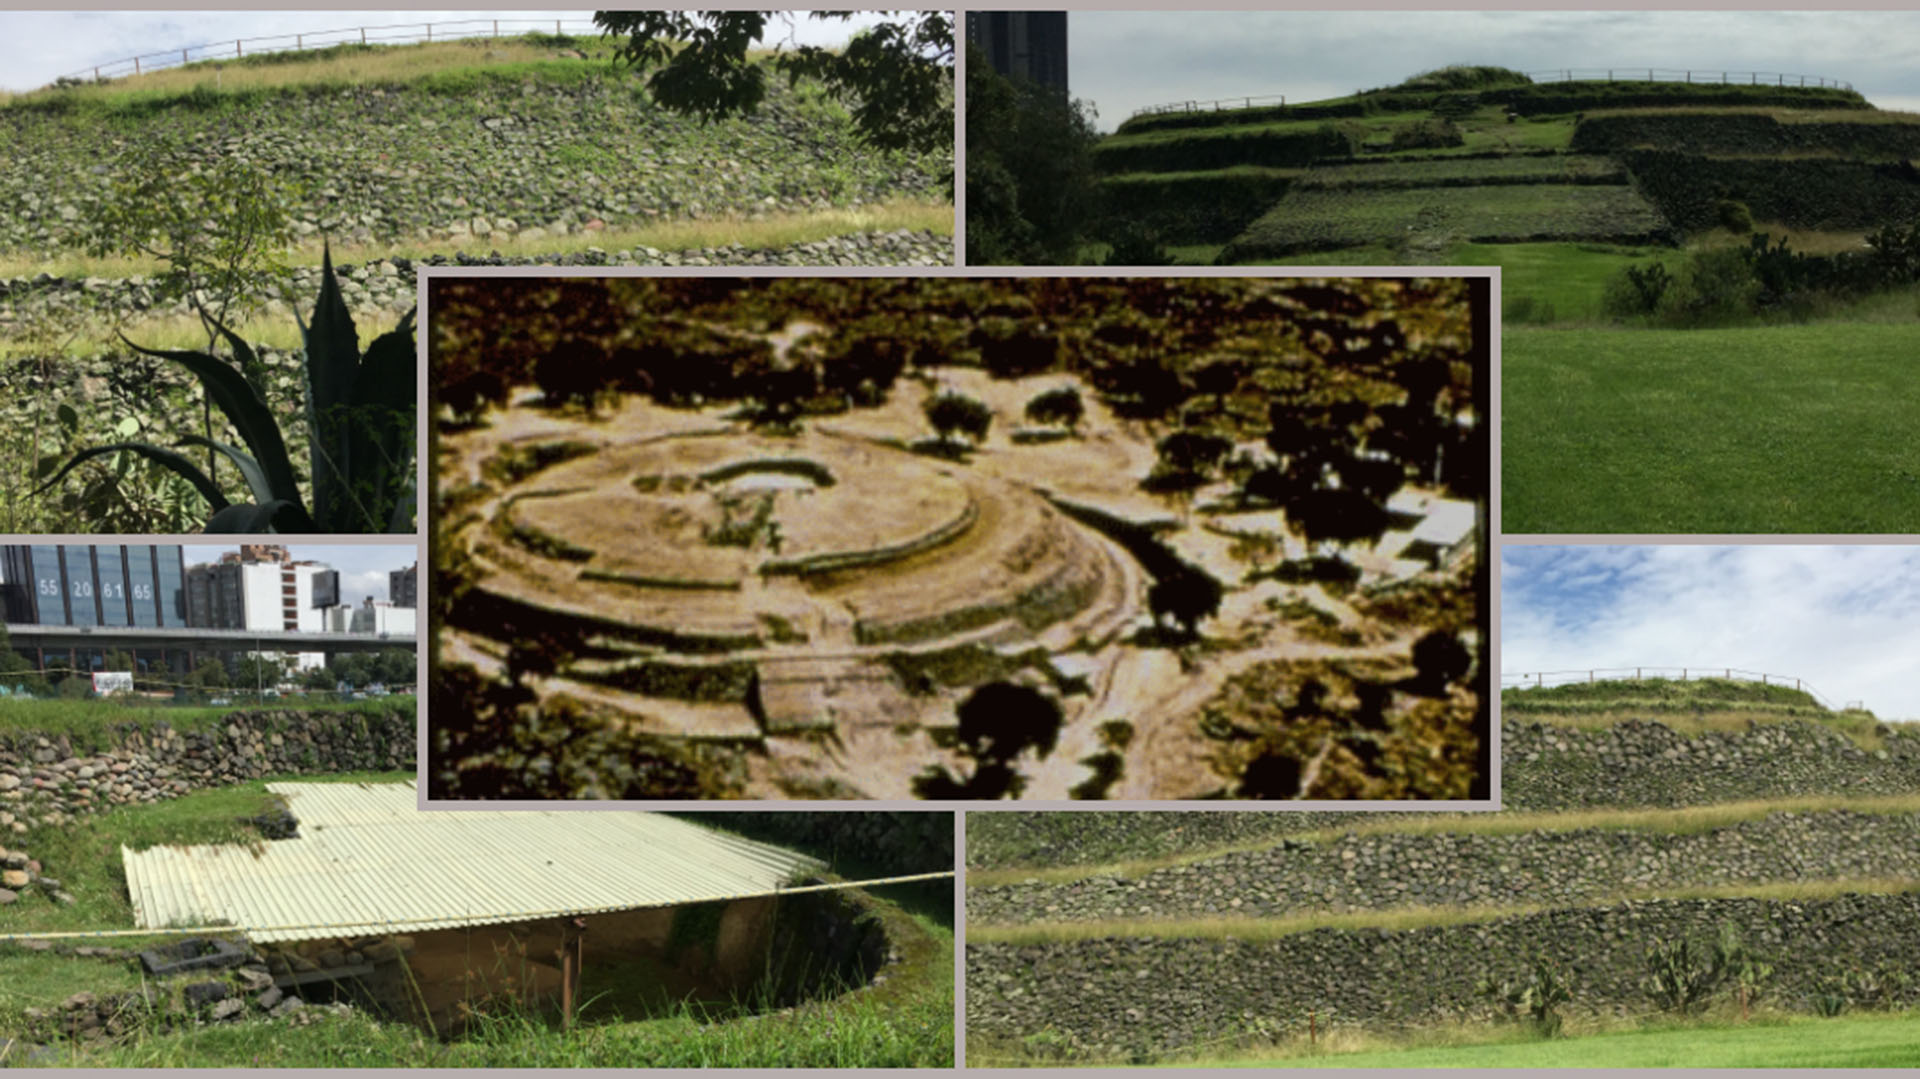 La historia de la “Pompeya mexicana” y su pirámide circular inmortalizada por Borges